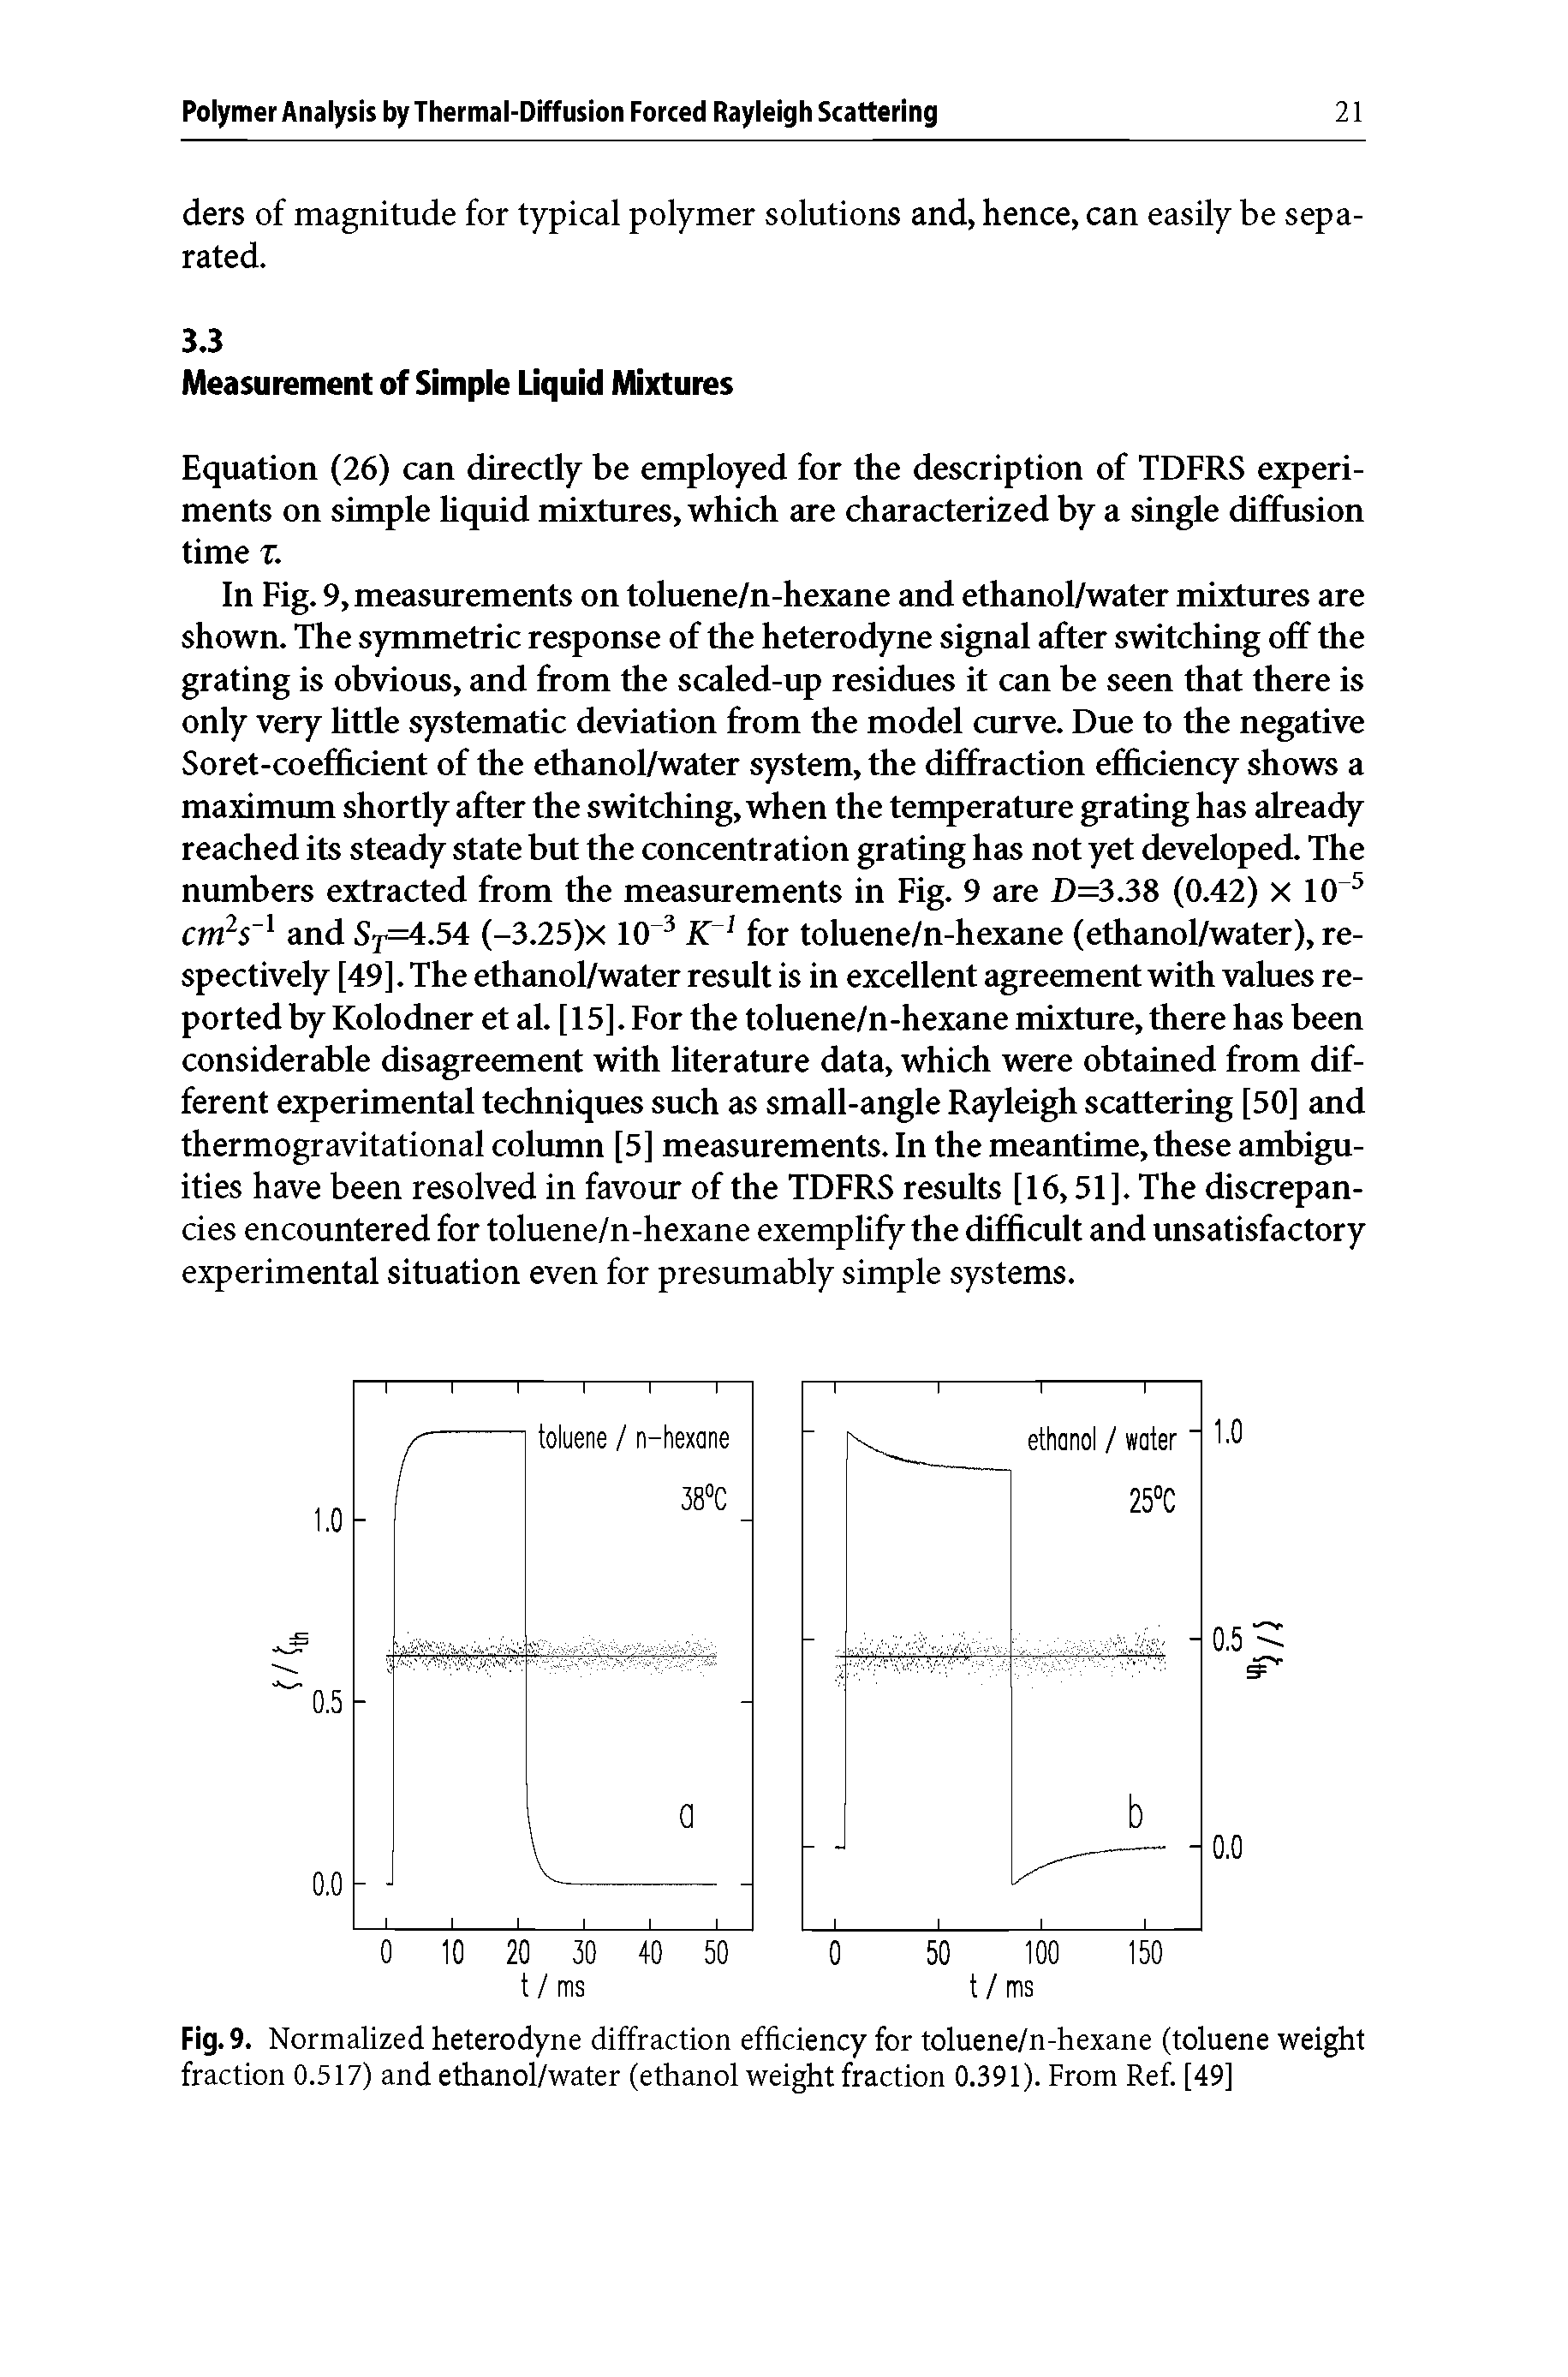 Fig. 9. Normalized heterodyne diffraction efficiency for toluene/n-hexane (toluene weight fraction 0.517) and ethanol/water (ethanol weight fraction 0.391). From Ref. [49]...